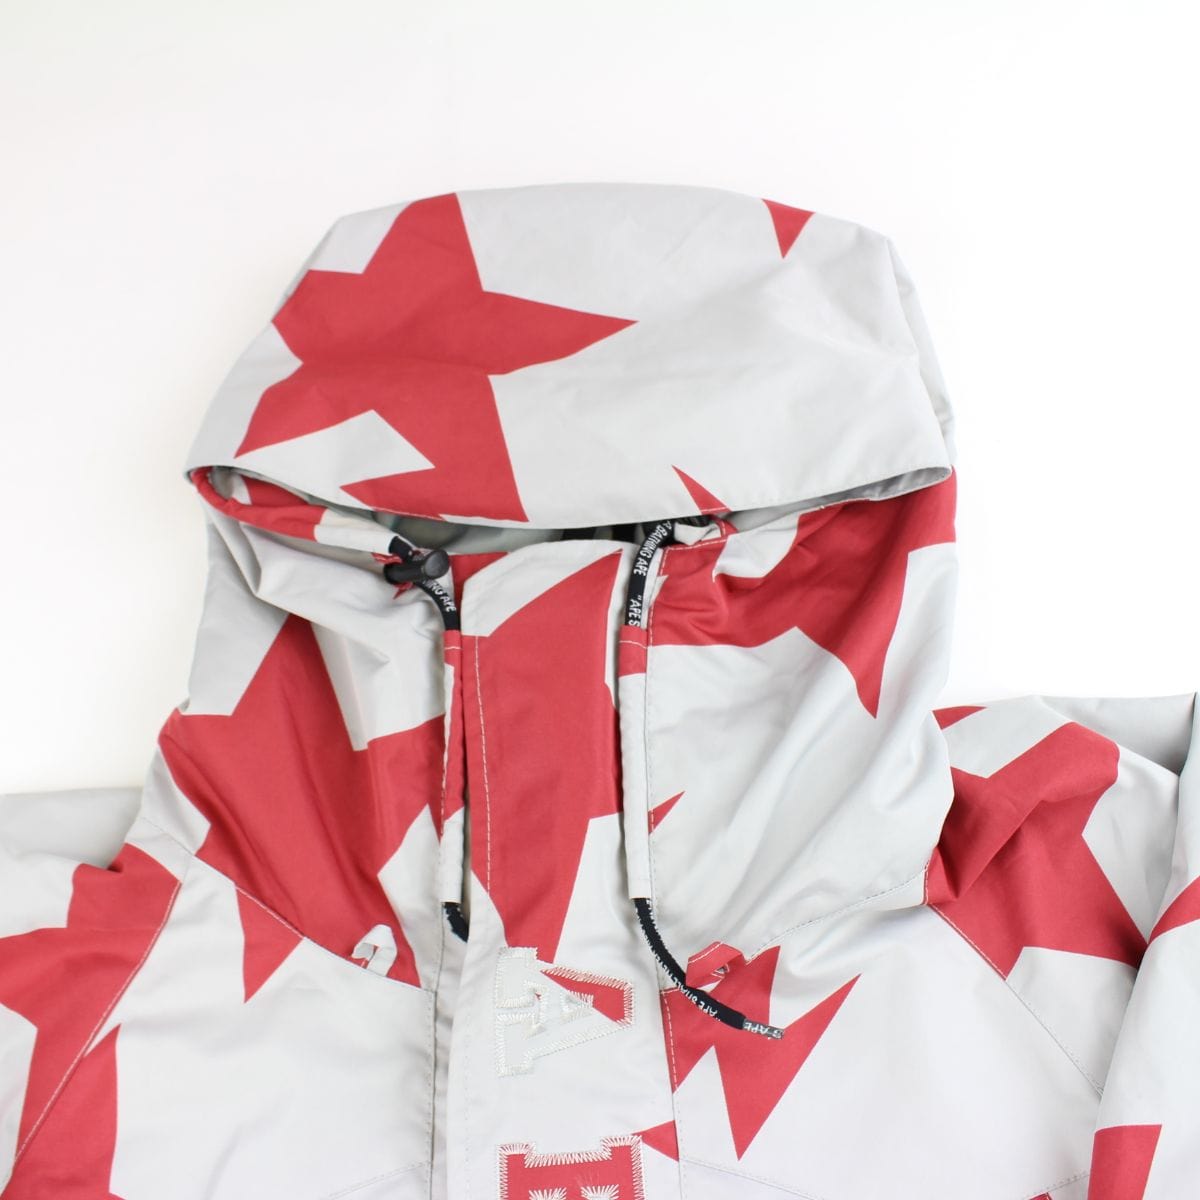 Bapesta snowboard jacket red grey - SaruGeneral